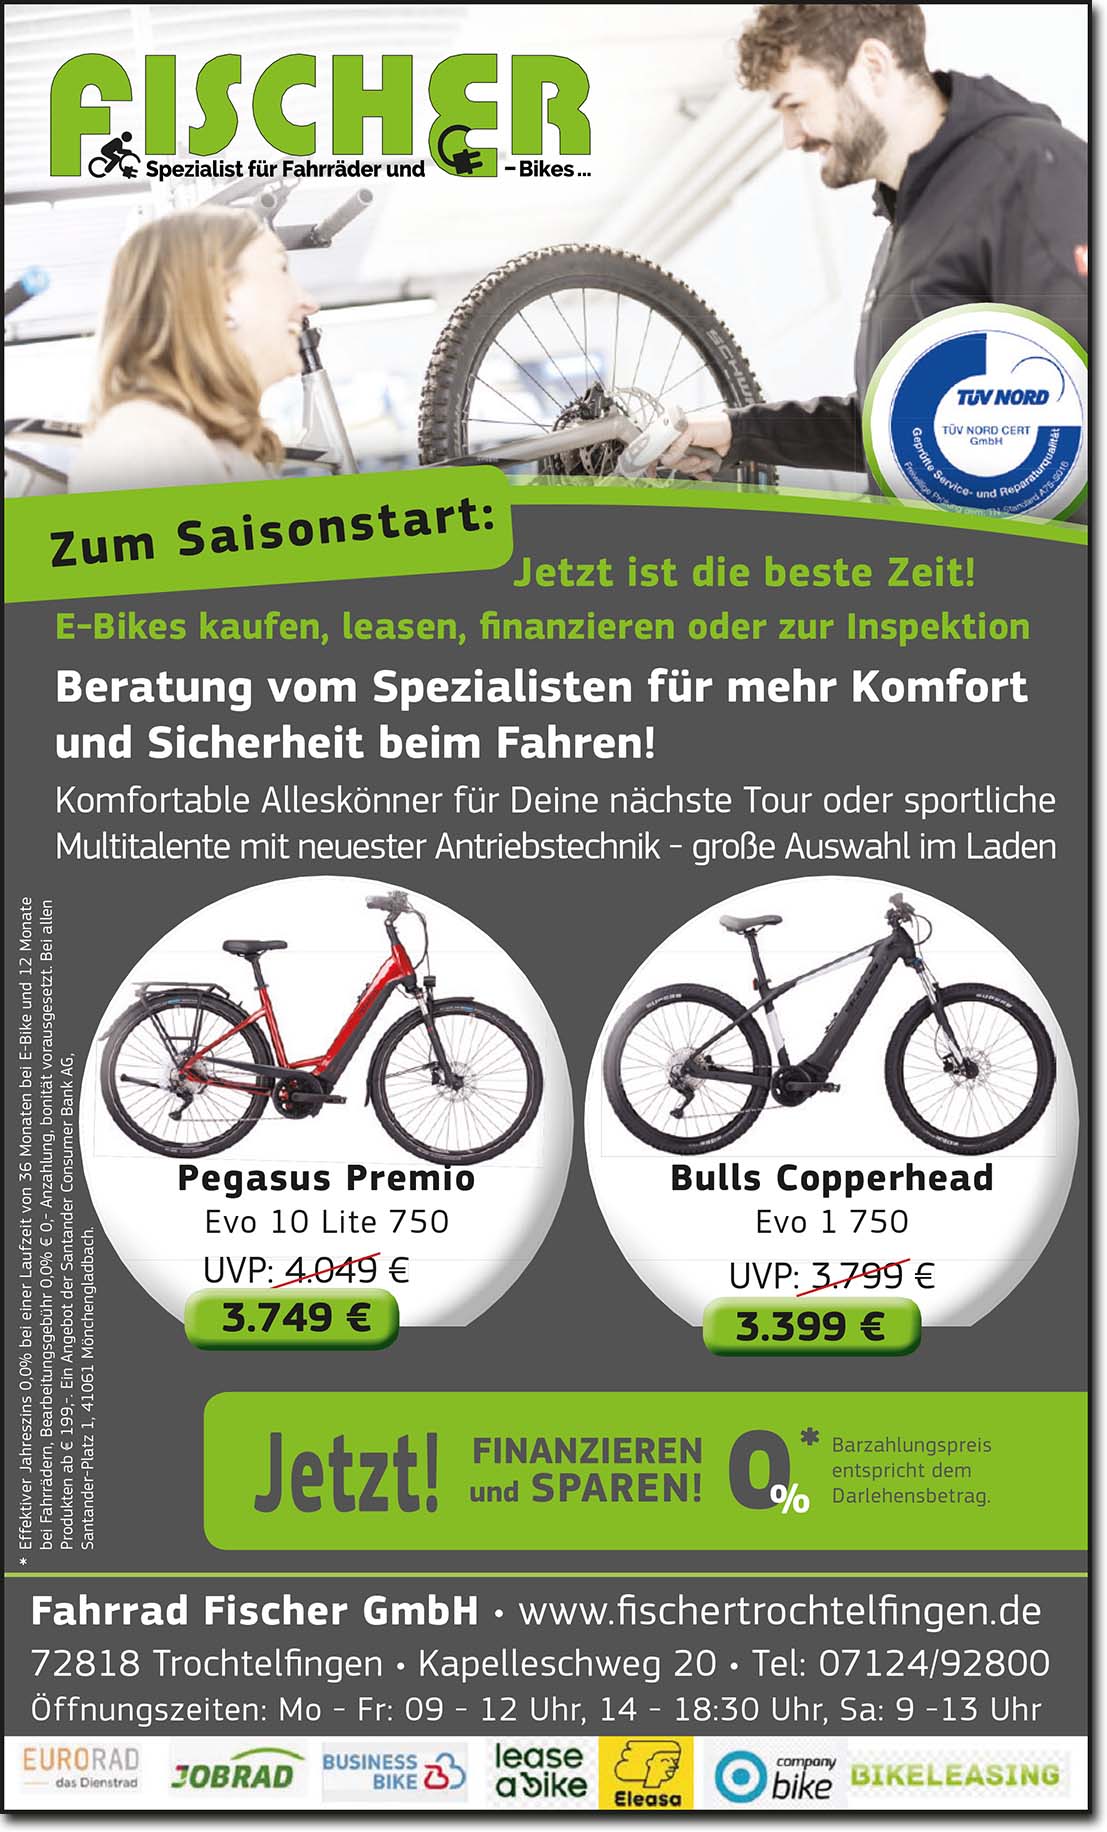 Fahrrad Fischer GmbH